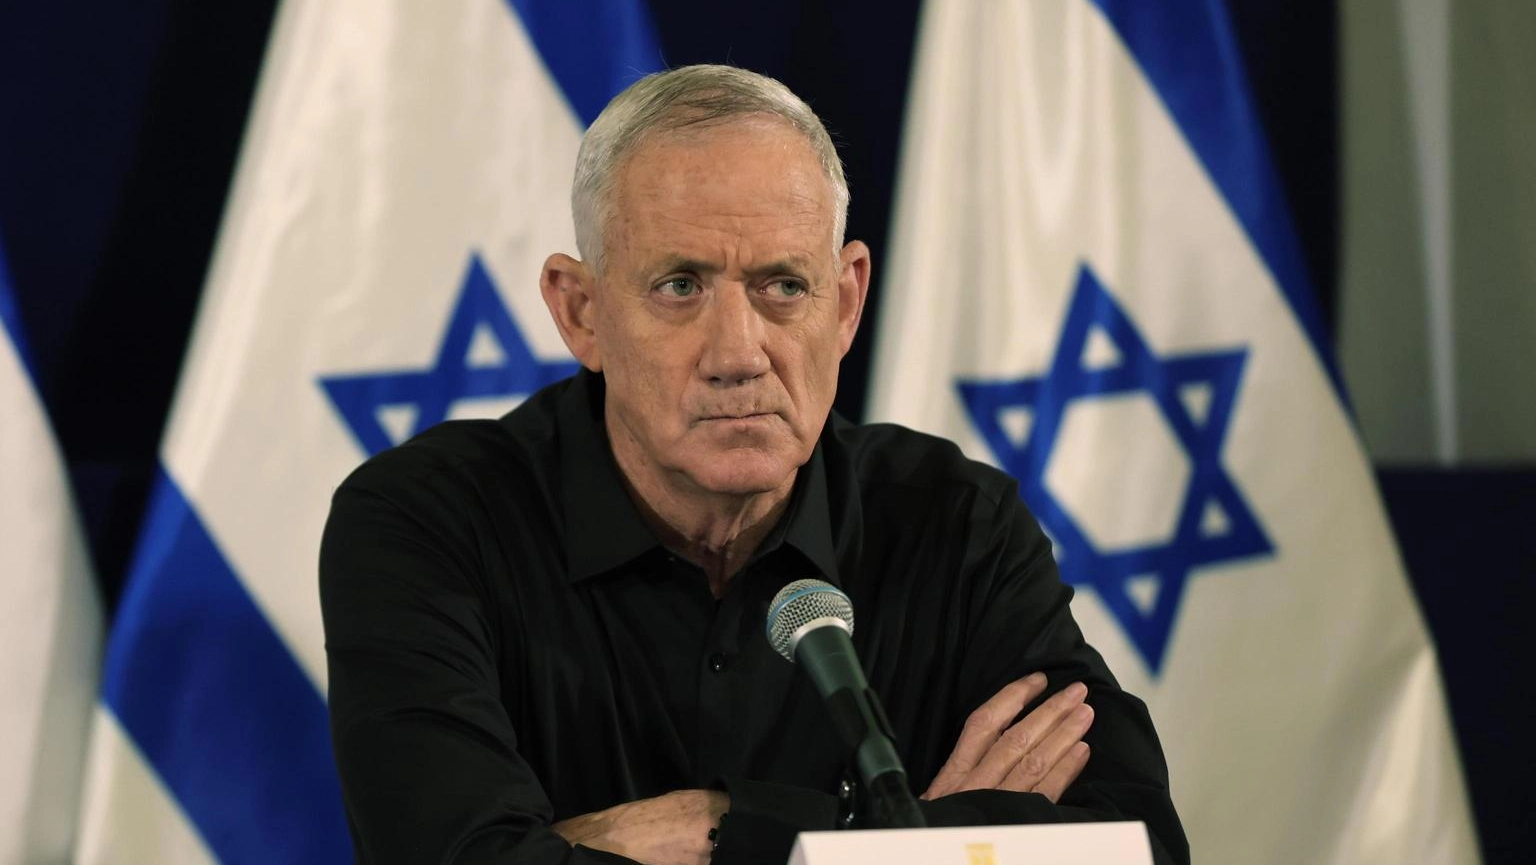 Gantz lascia il governo israeliano